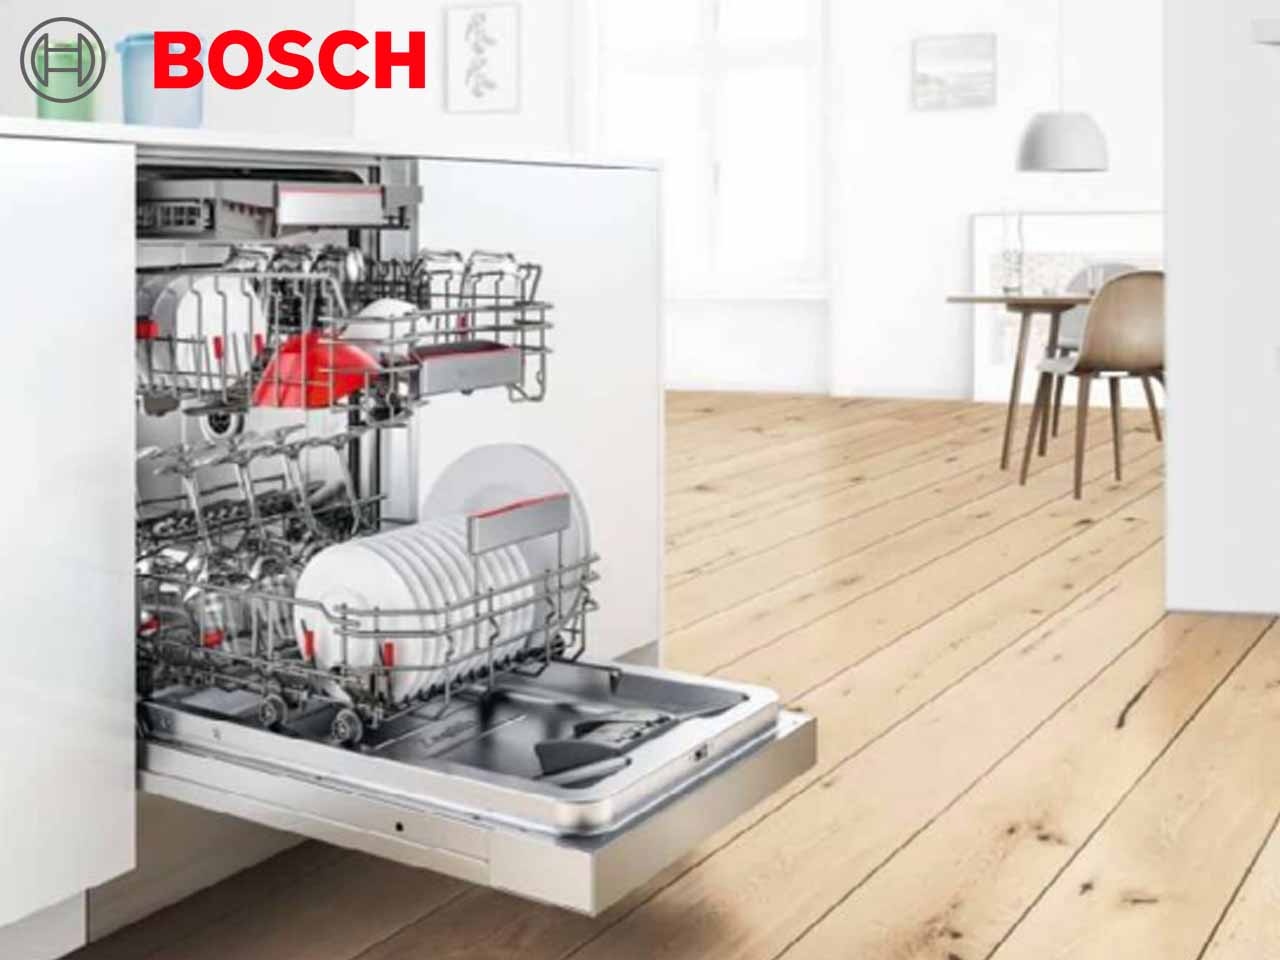 Bosch présente sa nouvelle gamme de lave-vaisselle économes